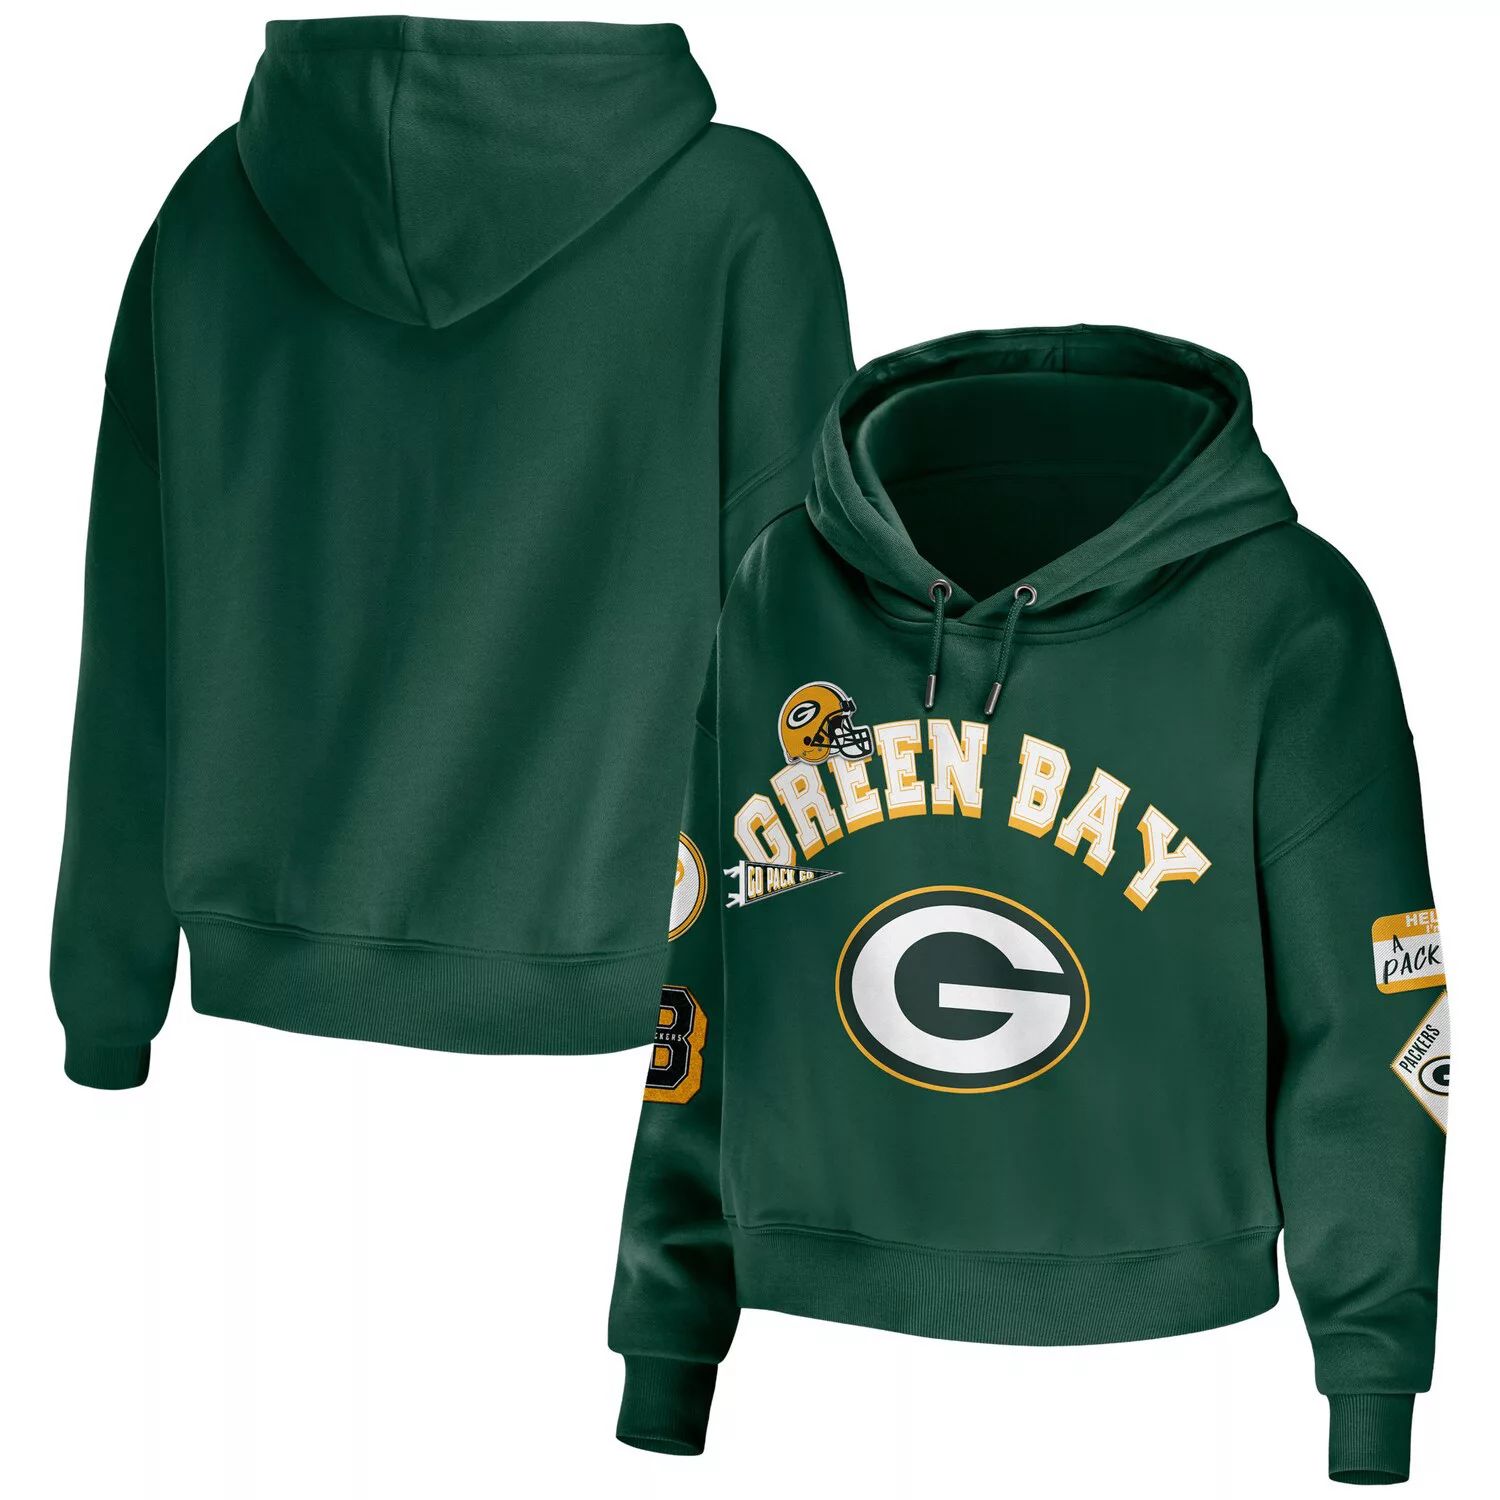 Женская одежда Erin Andrews Green Green Bay Packers Скромный укороченный пуловер больших размеров с капюшоном больших размеров